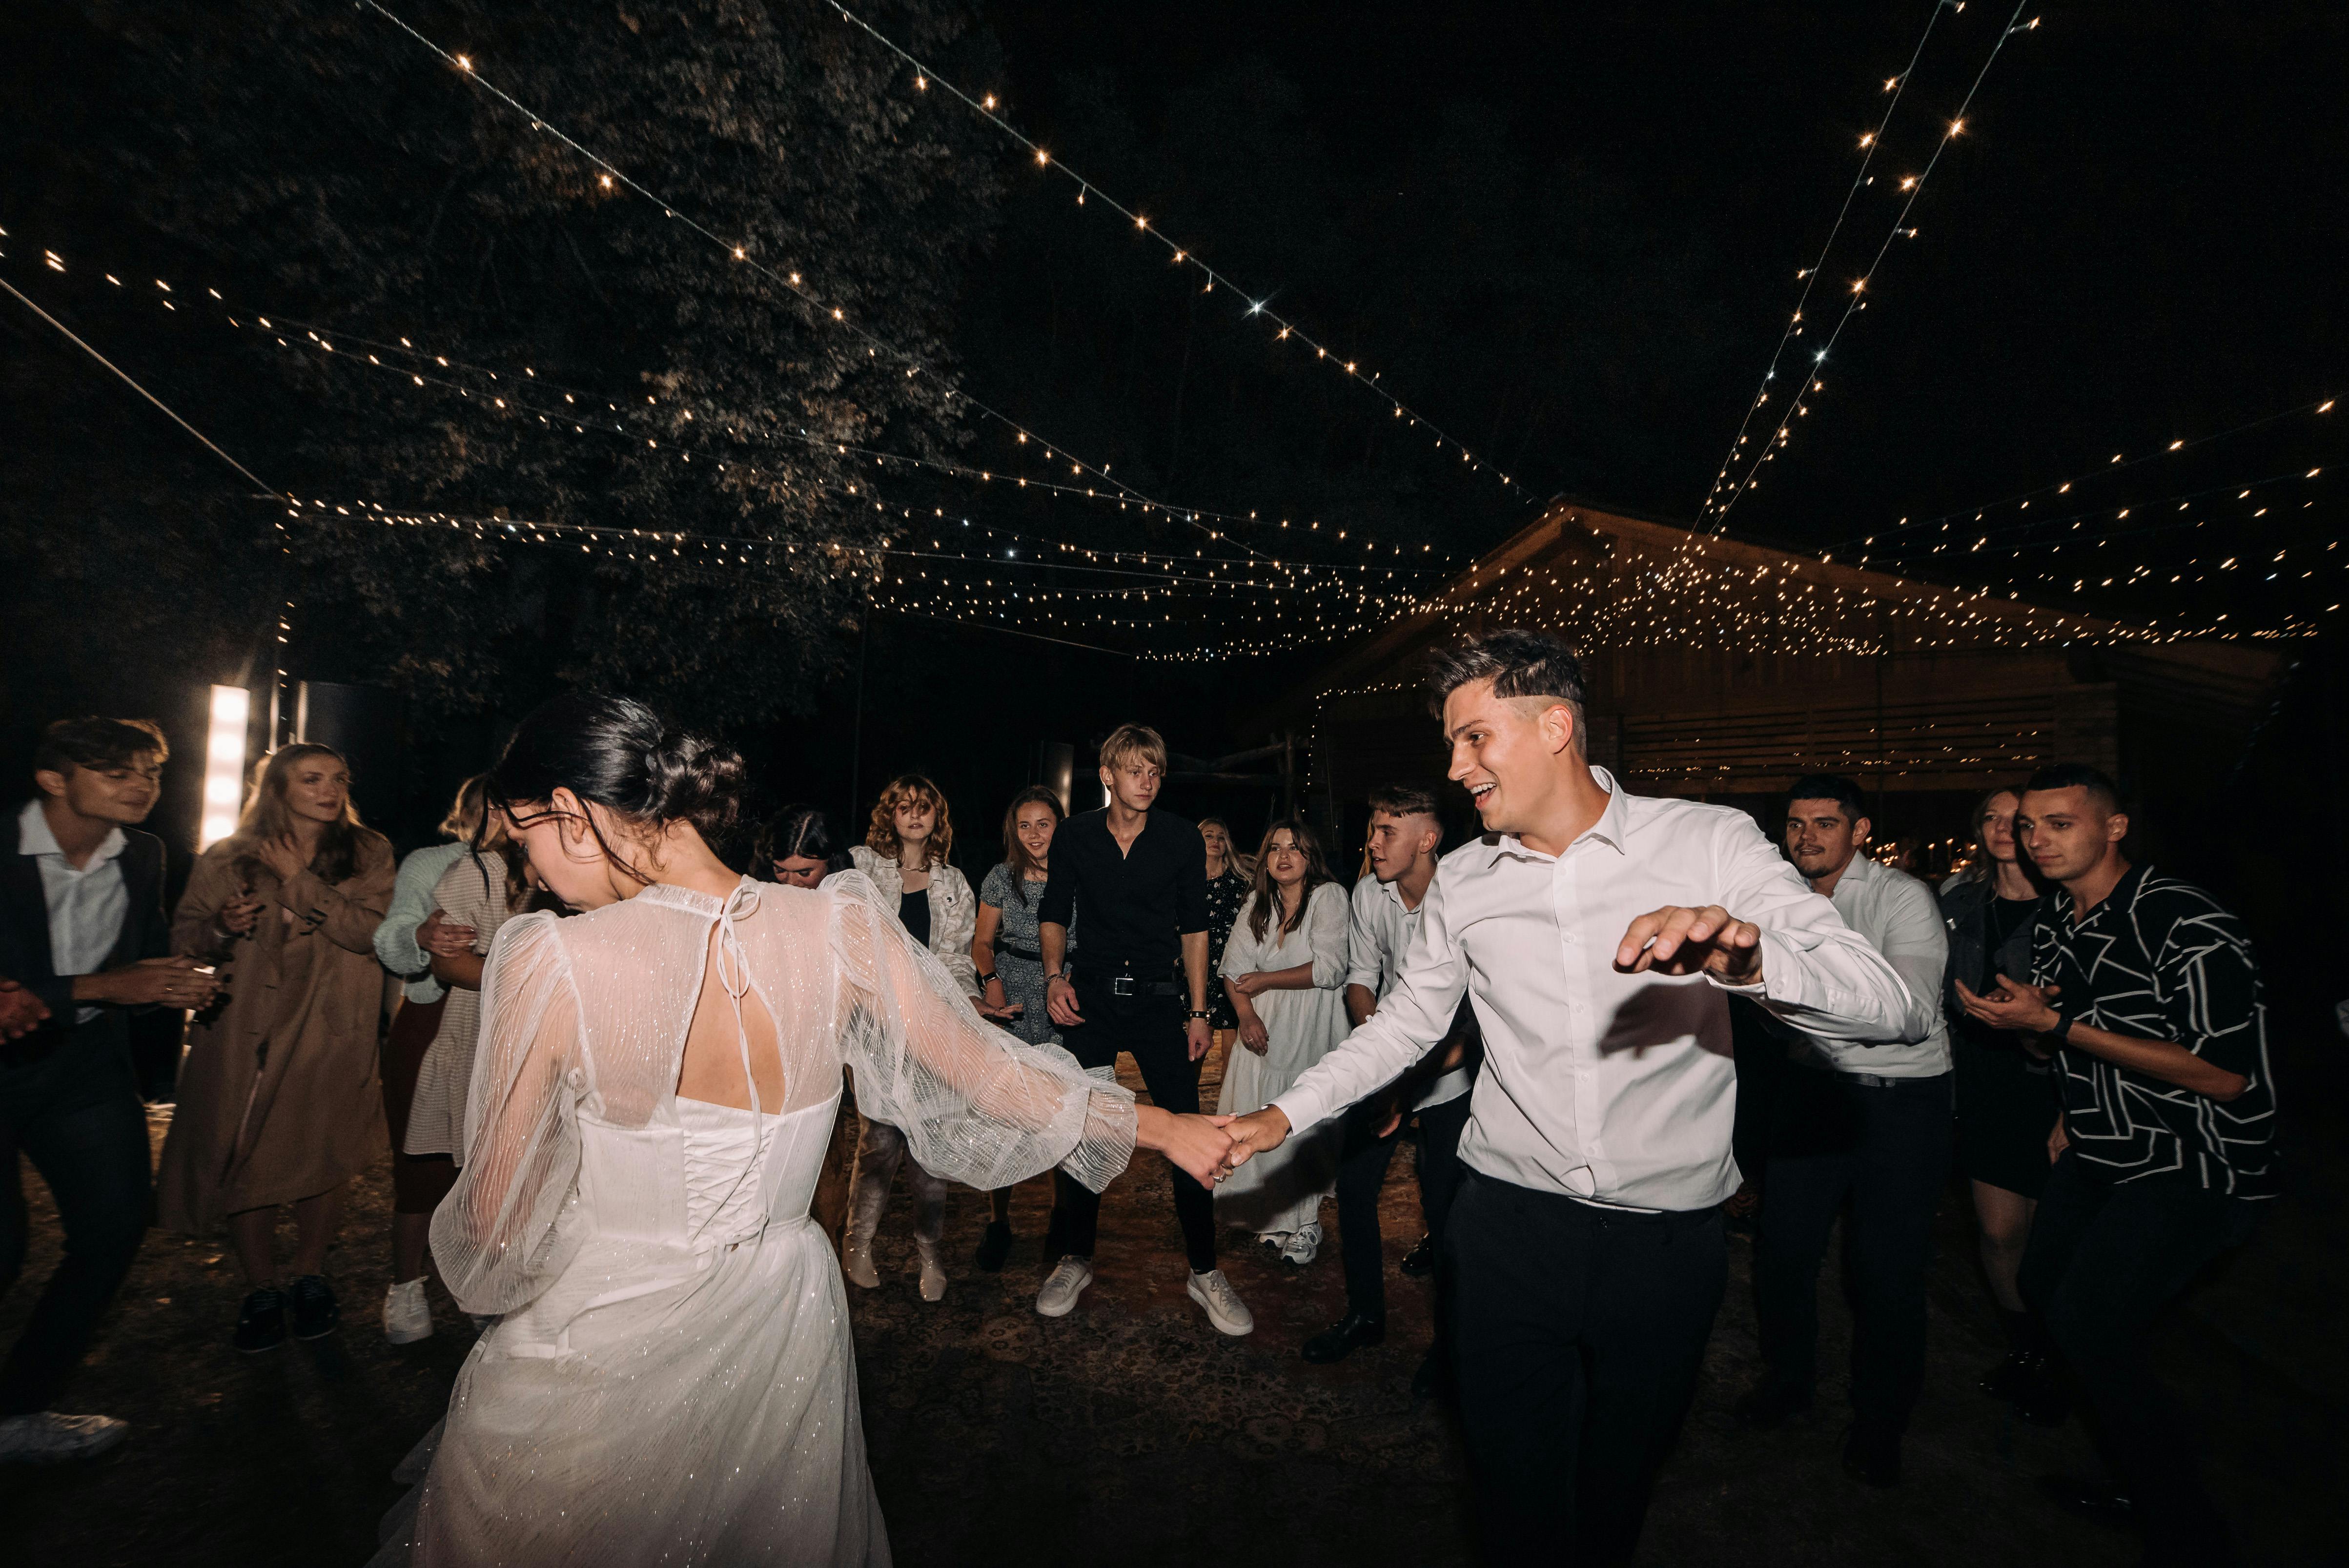 Un couple récemment marié en train de danser | Source : Pexels